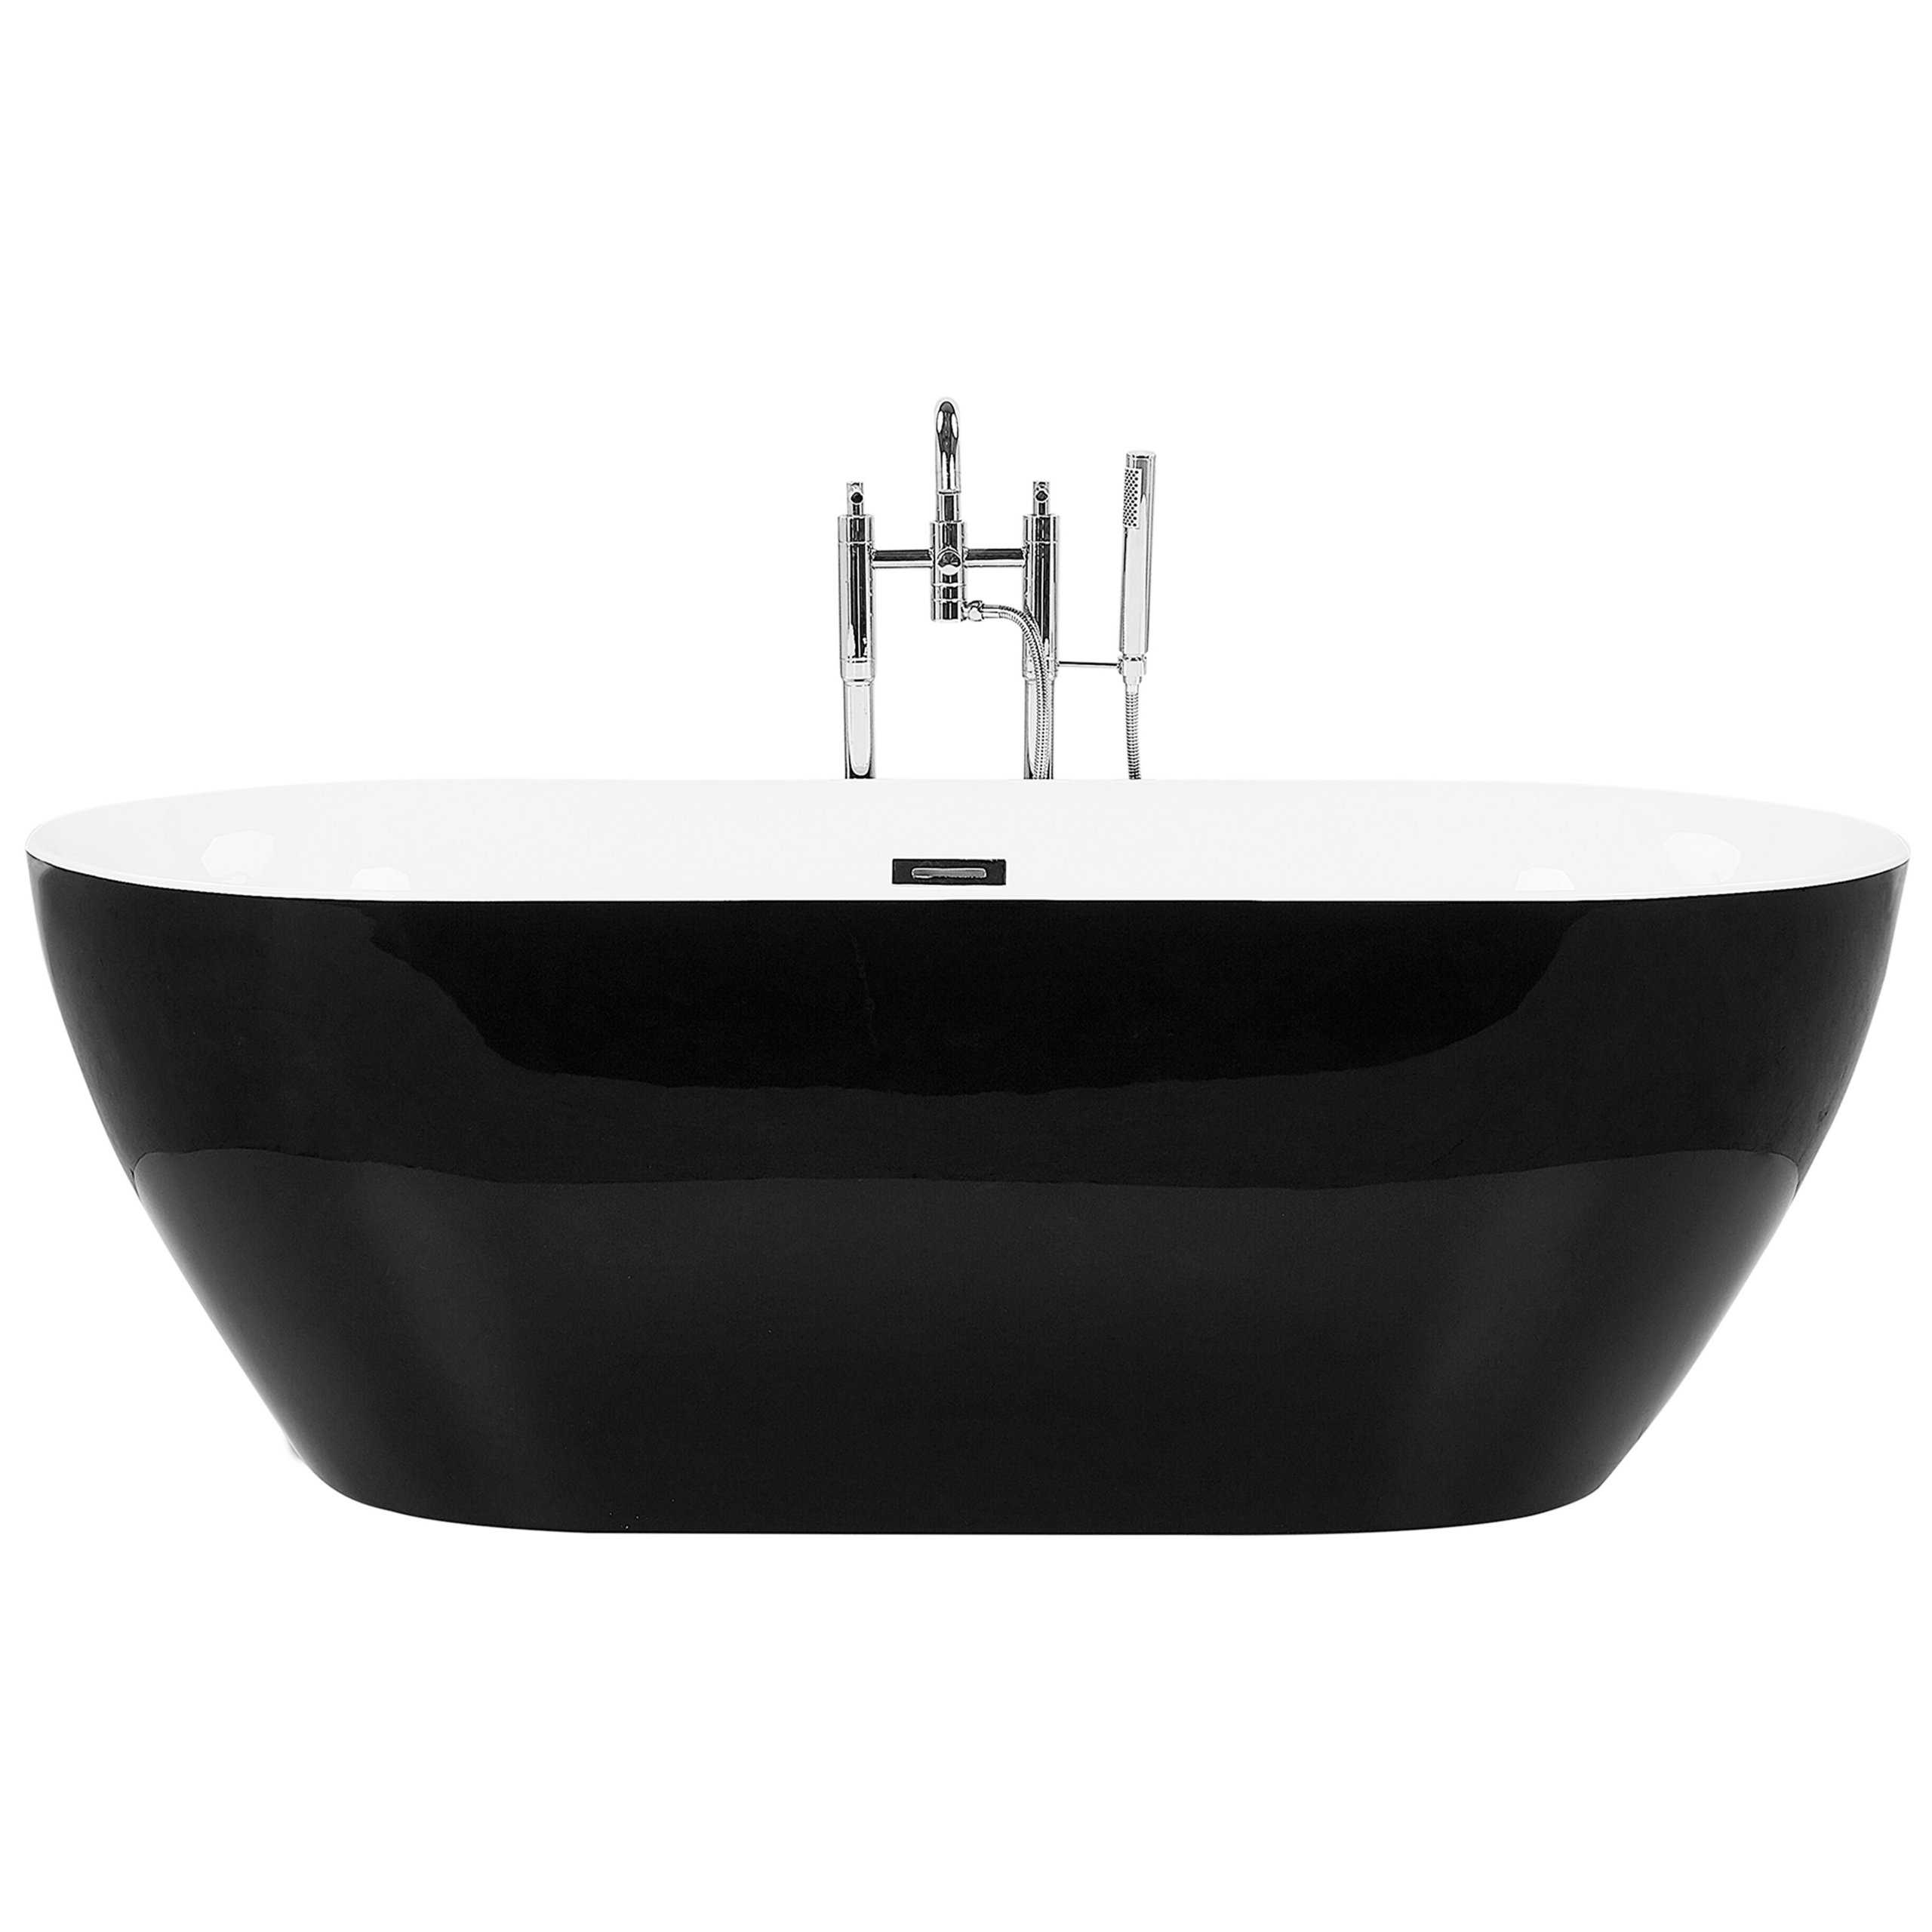 Beliani Banheira autónoma preta oval em acrílico sanitário 160 x 79 cm design moderno